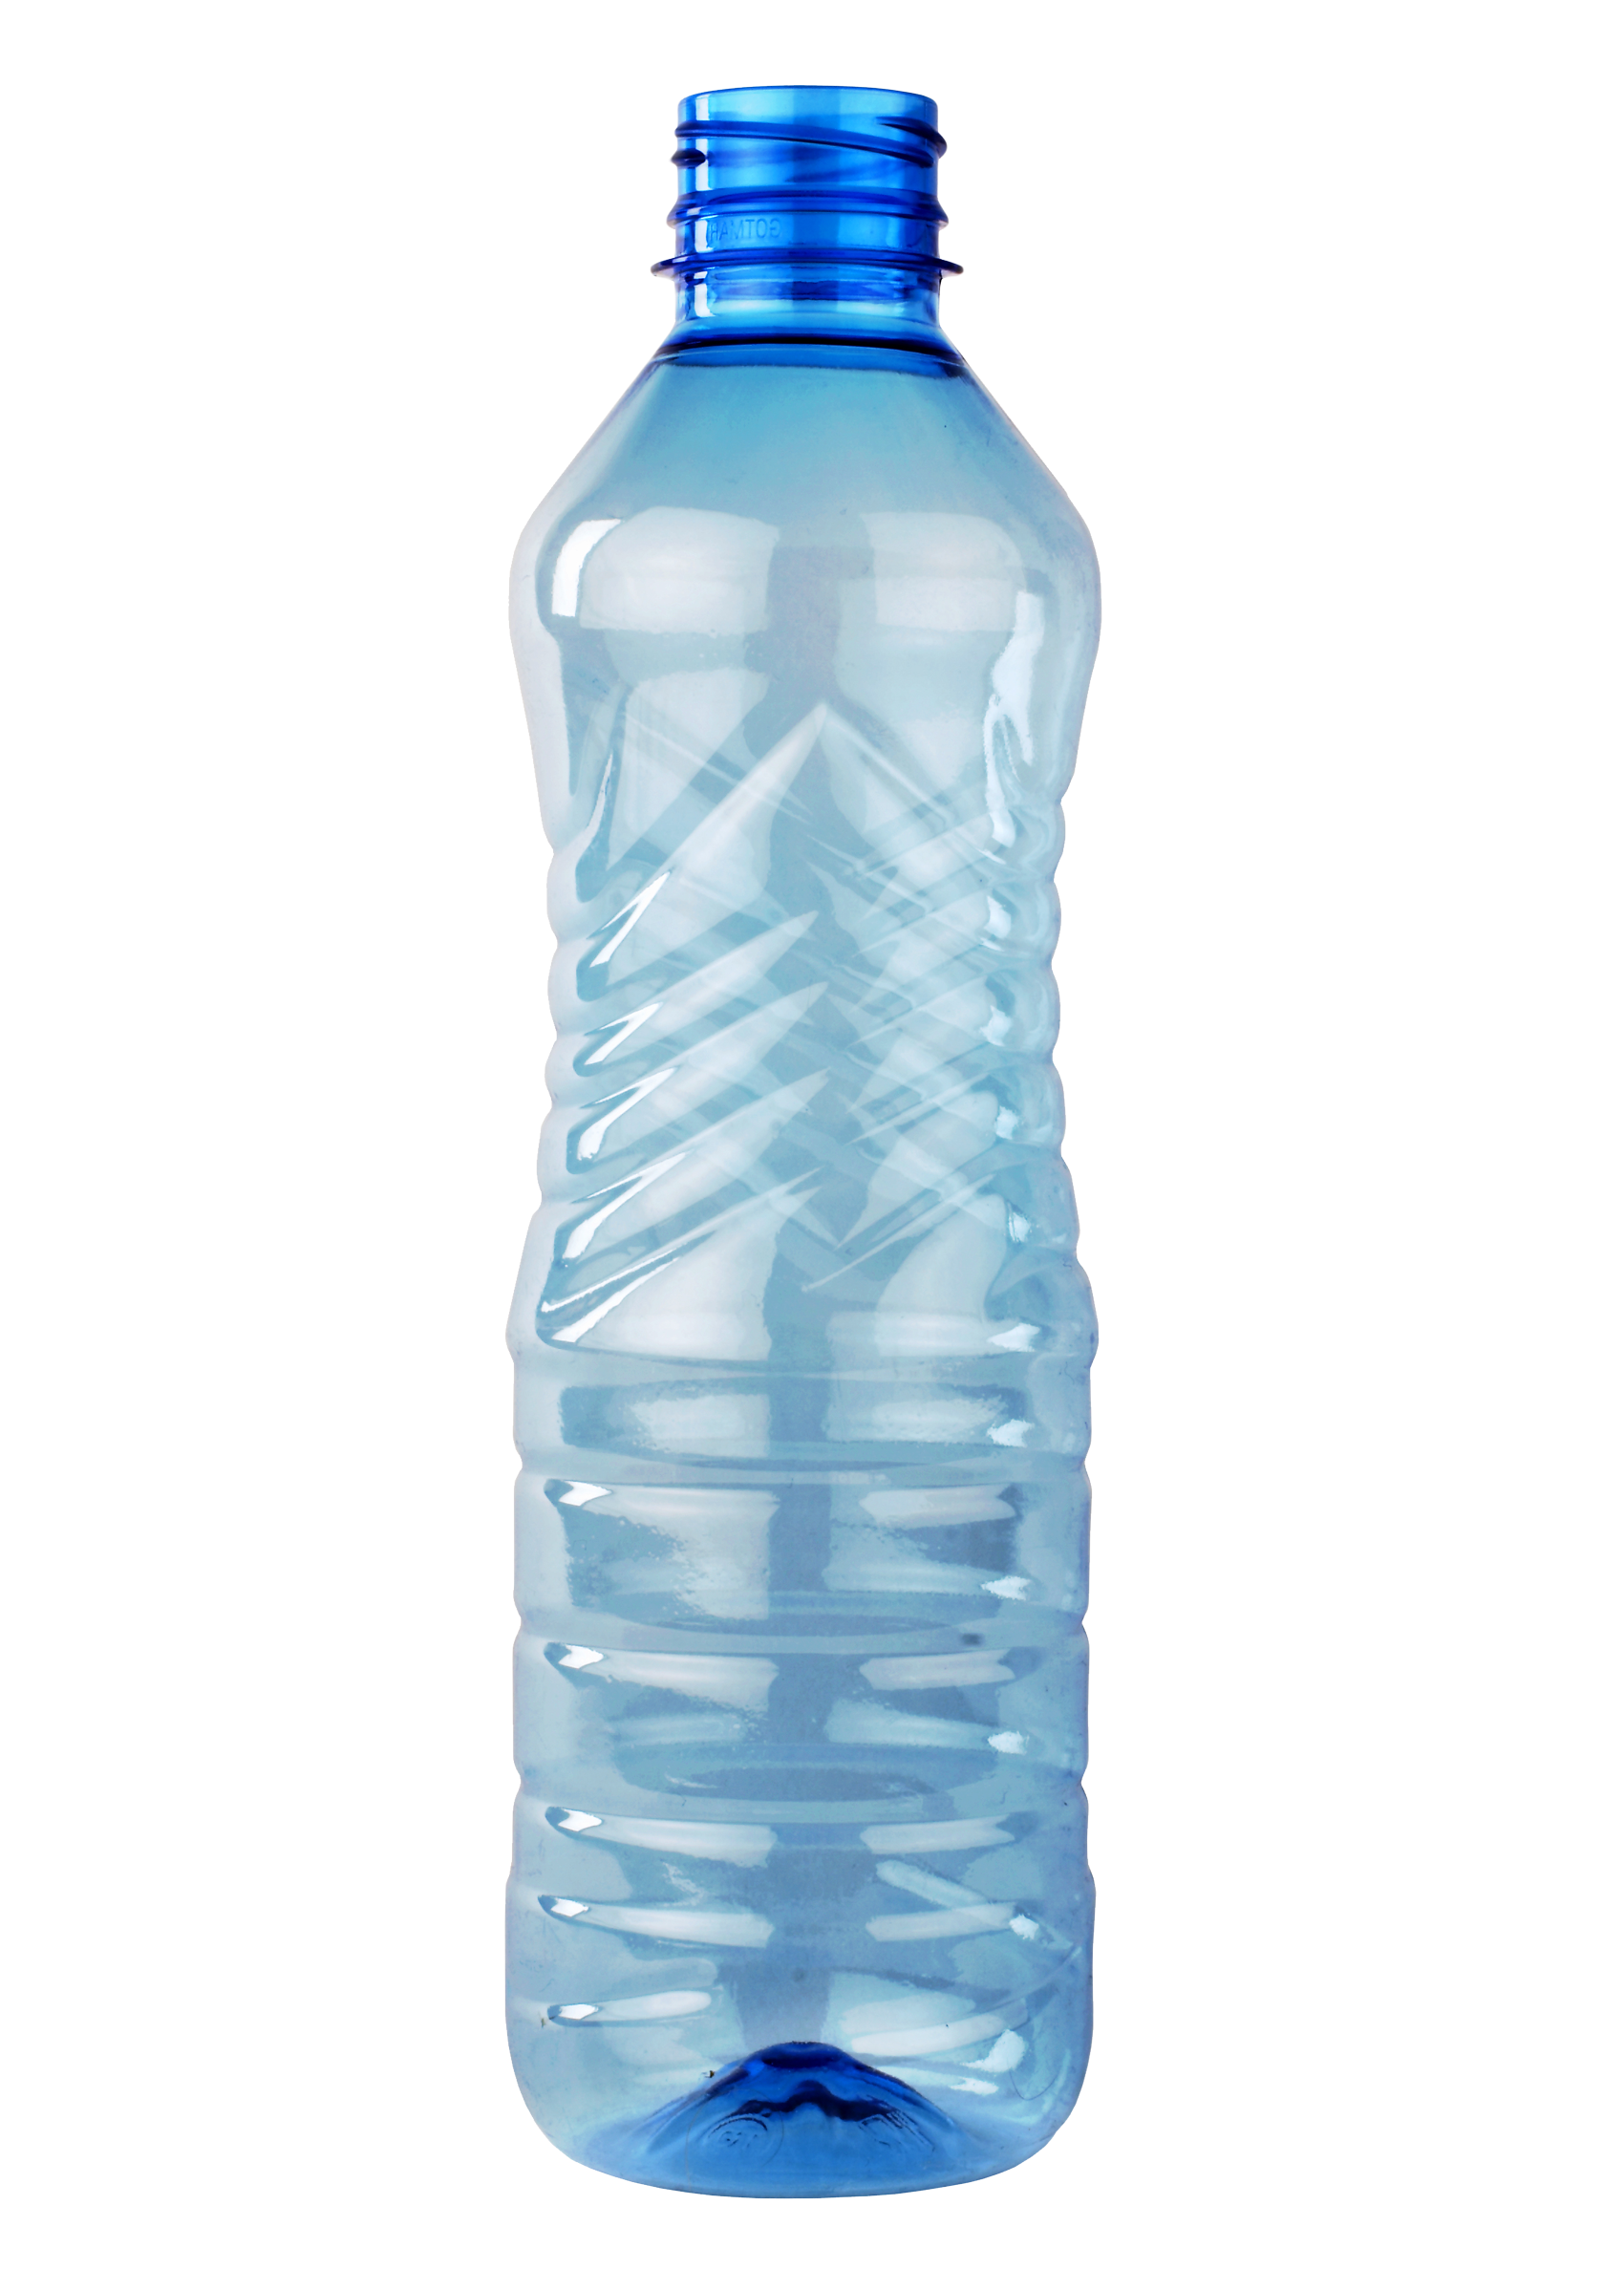 Transparent Water Bottle PNG Transparent Image